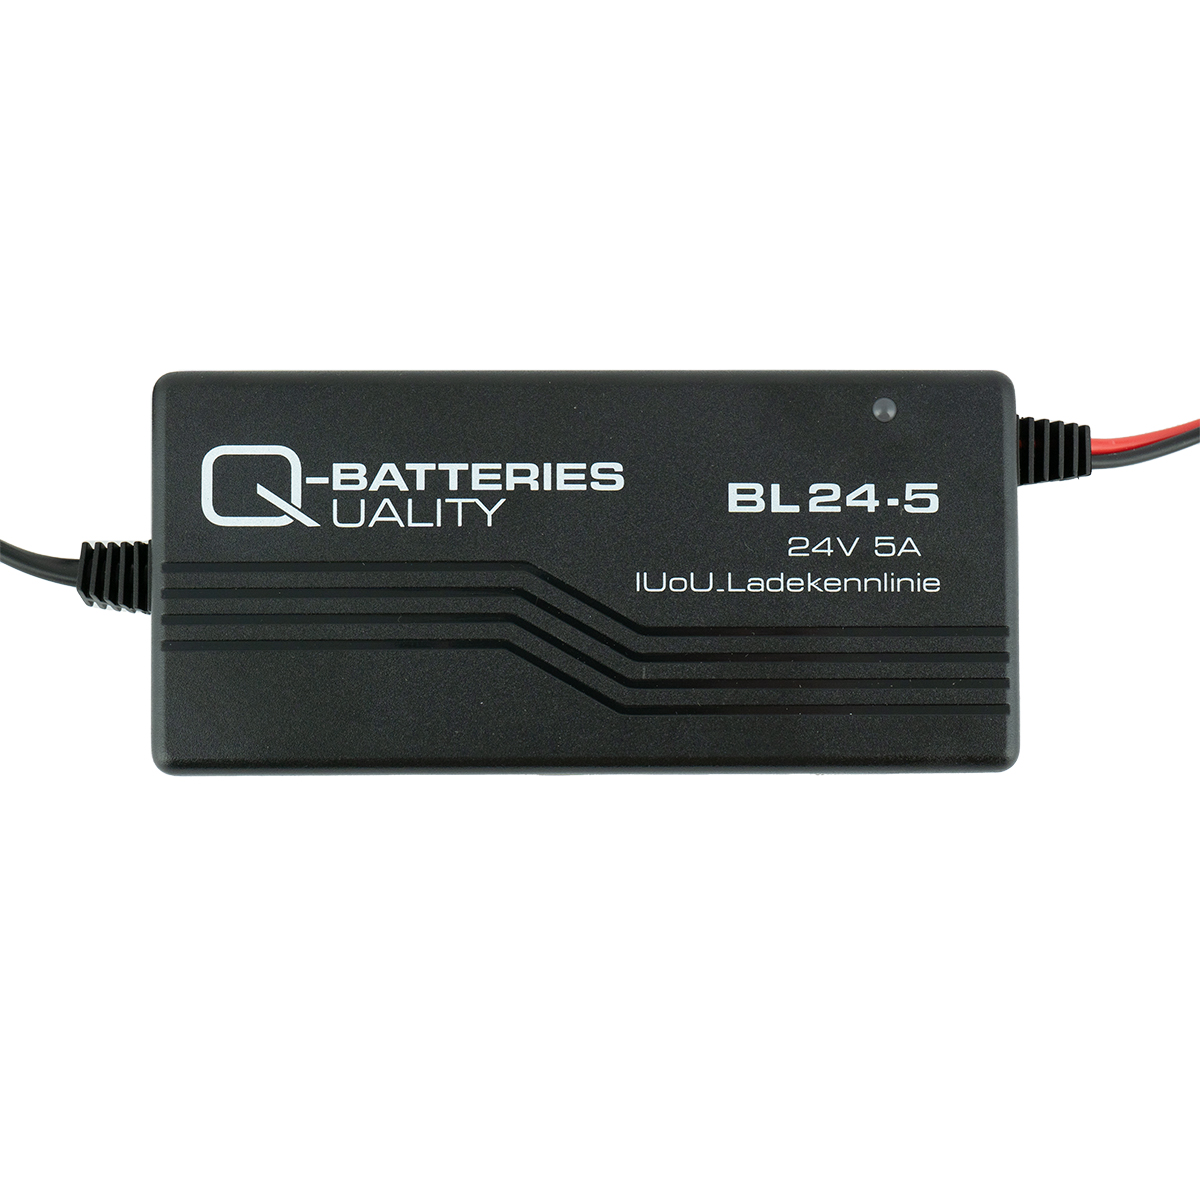 Q-Batteries BL 24-5 Ladegerät XLR-Stecker für Bleiakkus 24V - 5A Ladestrom IU0U Ladekennlinie